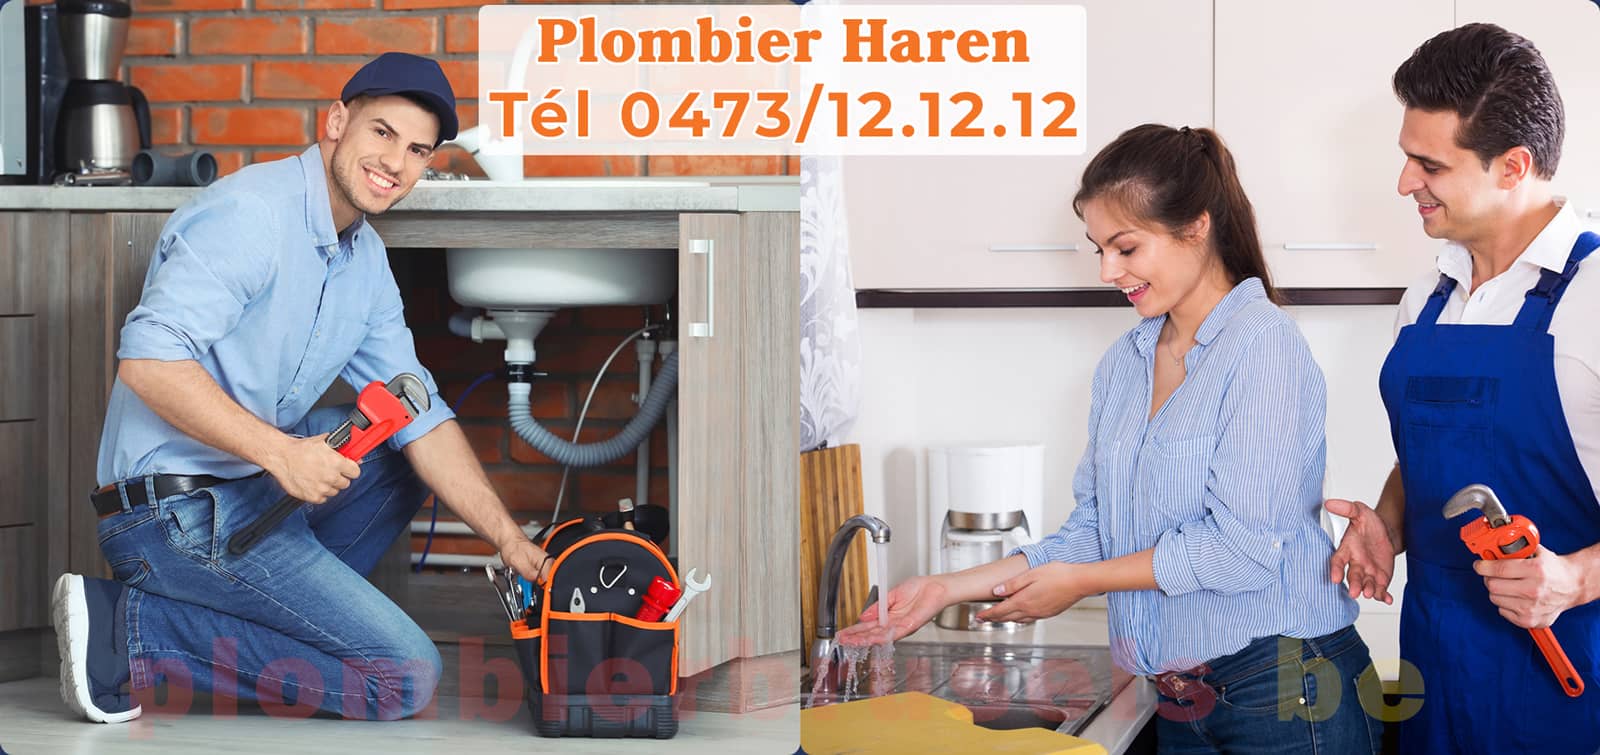 Plombier Haren service de Plomberie tél 0473/12.12.12